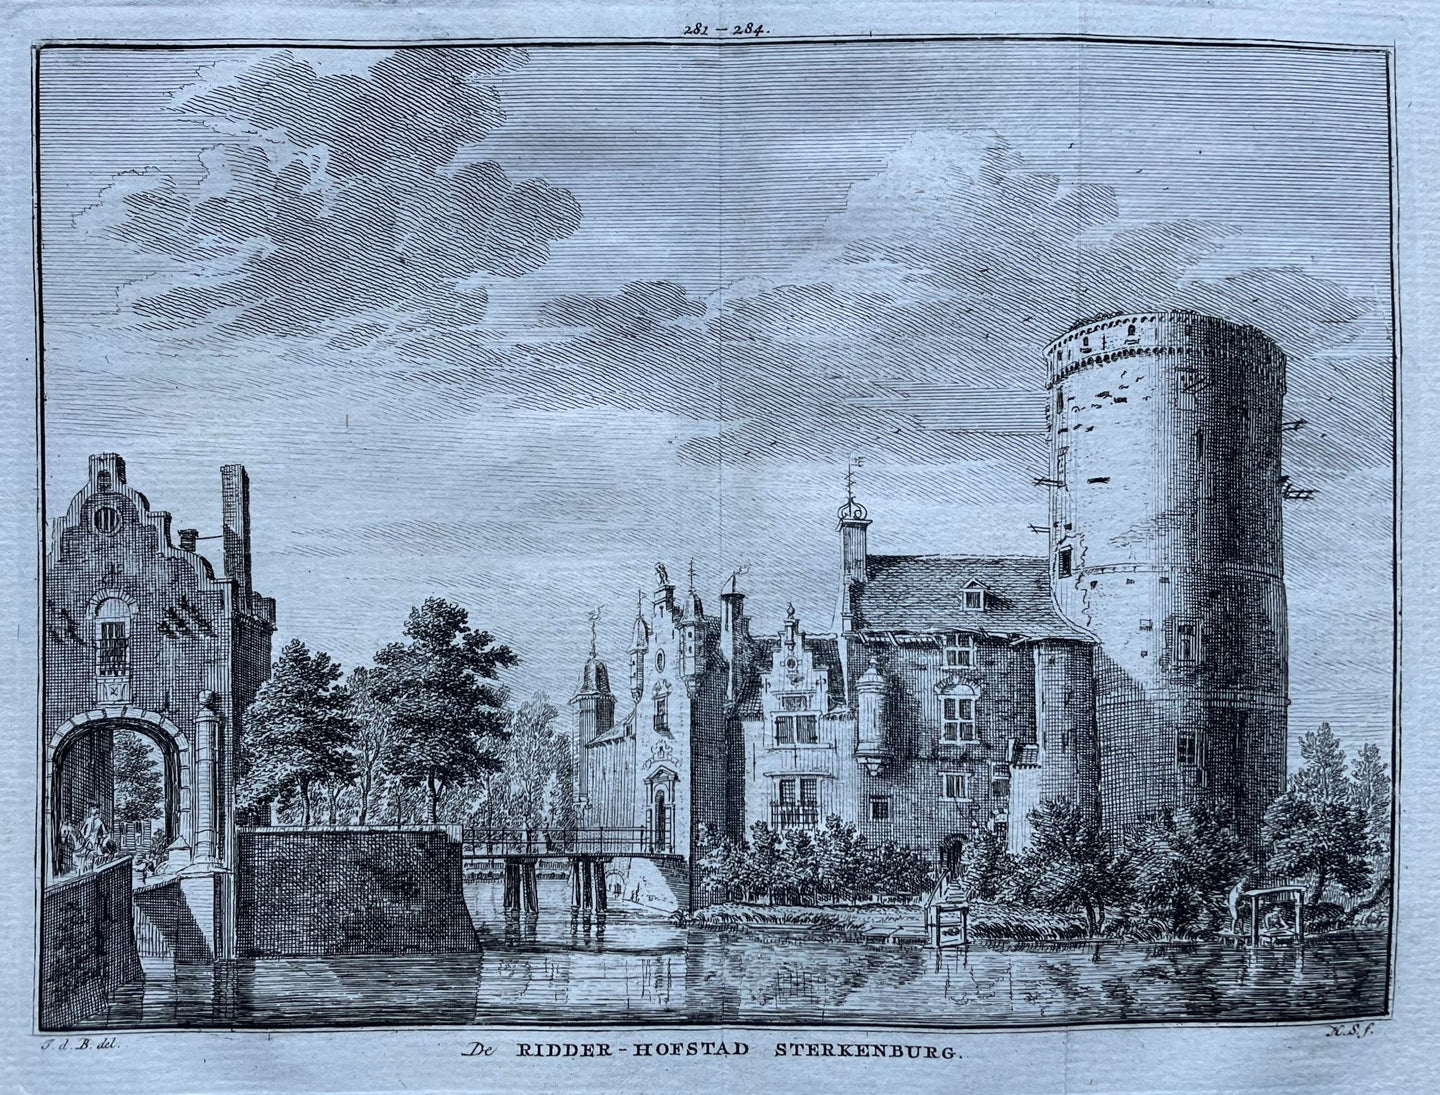 Driebergen Sterkenburg - H Spilman - ca. 1750